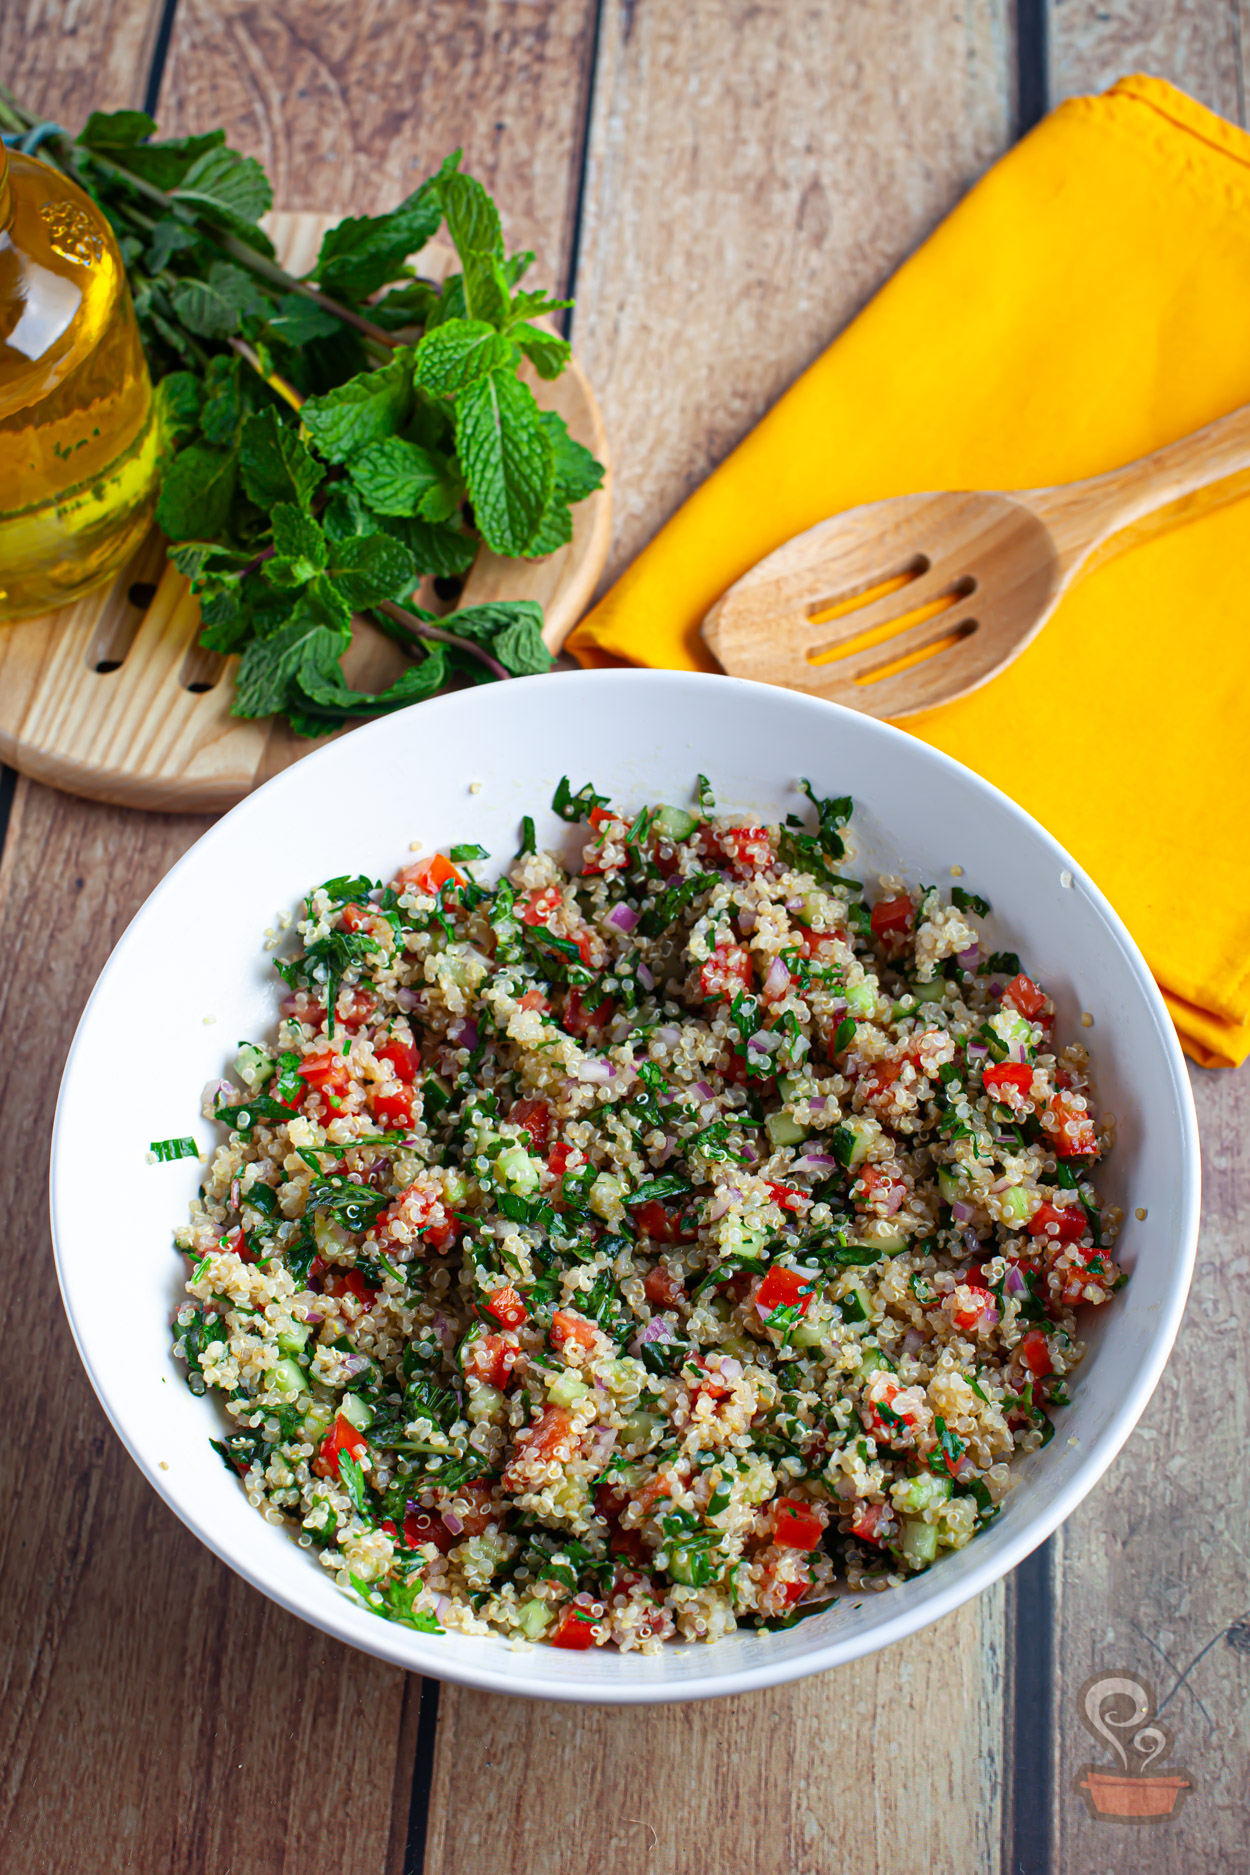 Tabule de quinoa - Quero Comida de Verdade - Alimentação saudável